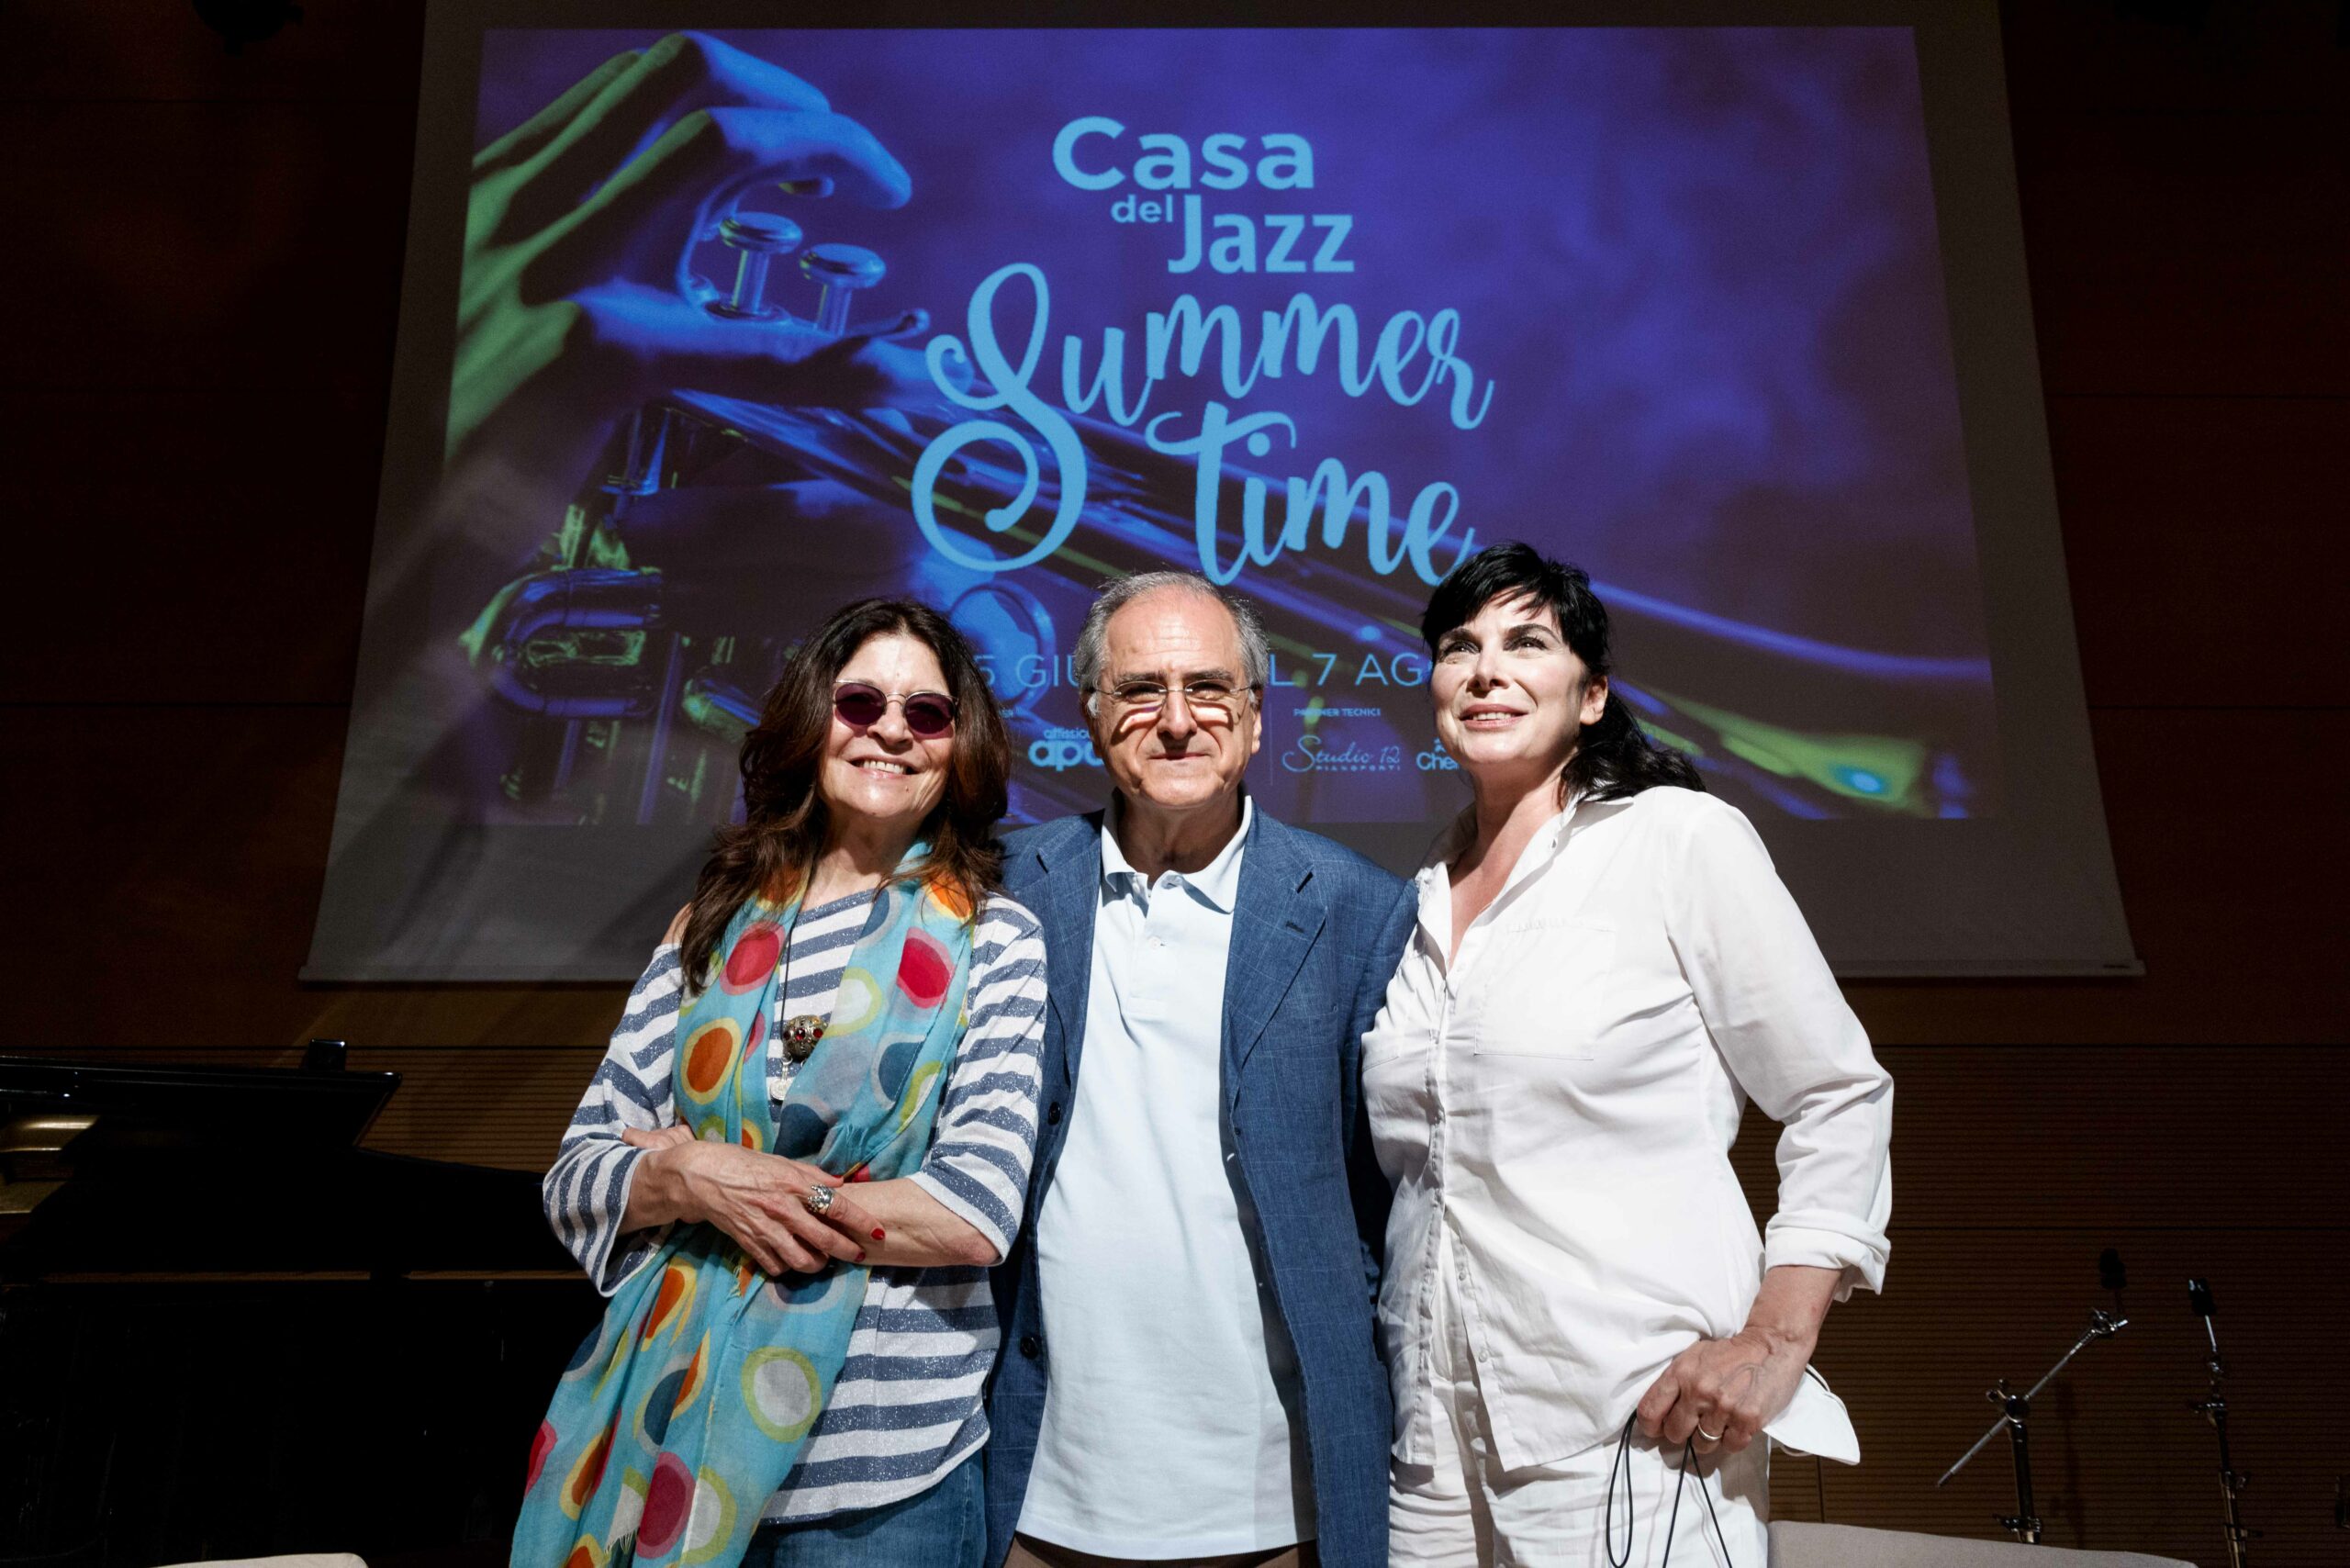 Casa del Jazz, il programma di Summertime 2022 e dei Concerti nel Parco zerkalo spettacolo